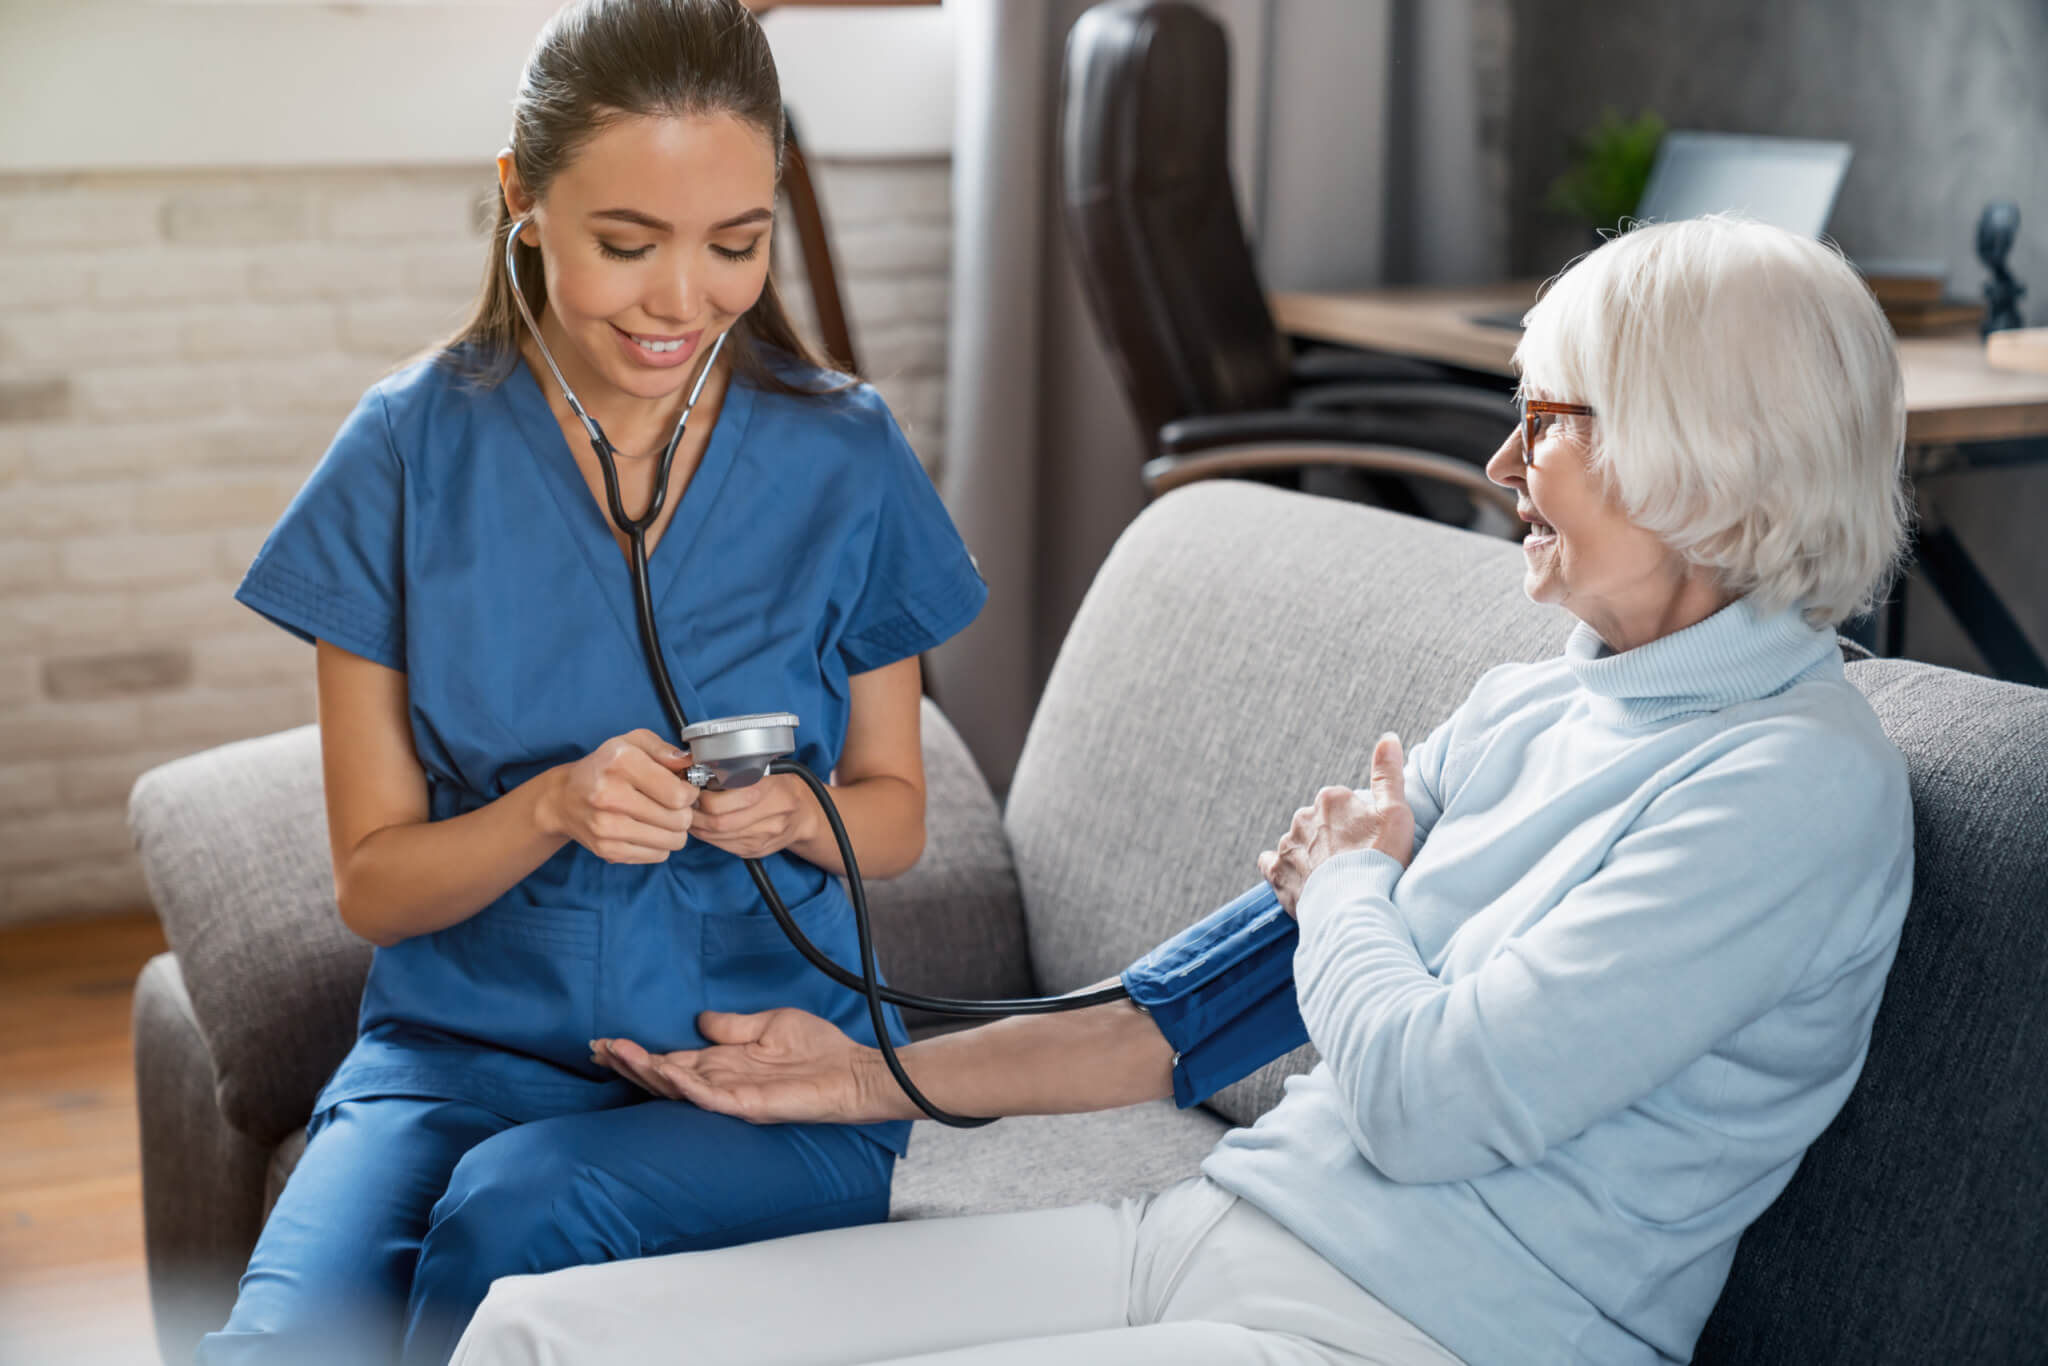 Nurse takes elderly patient's blood pressure